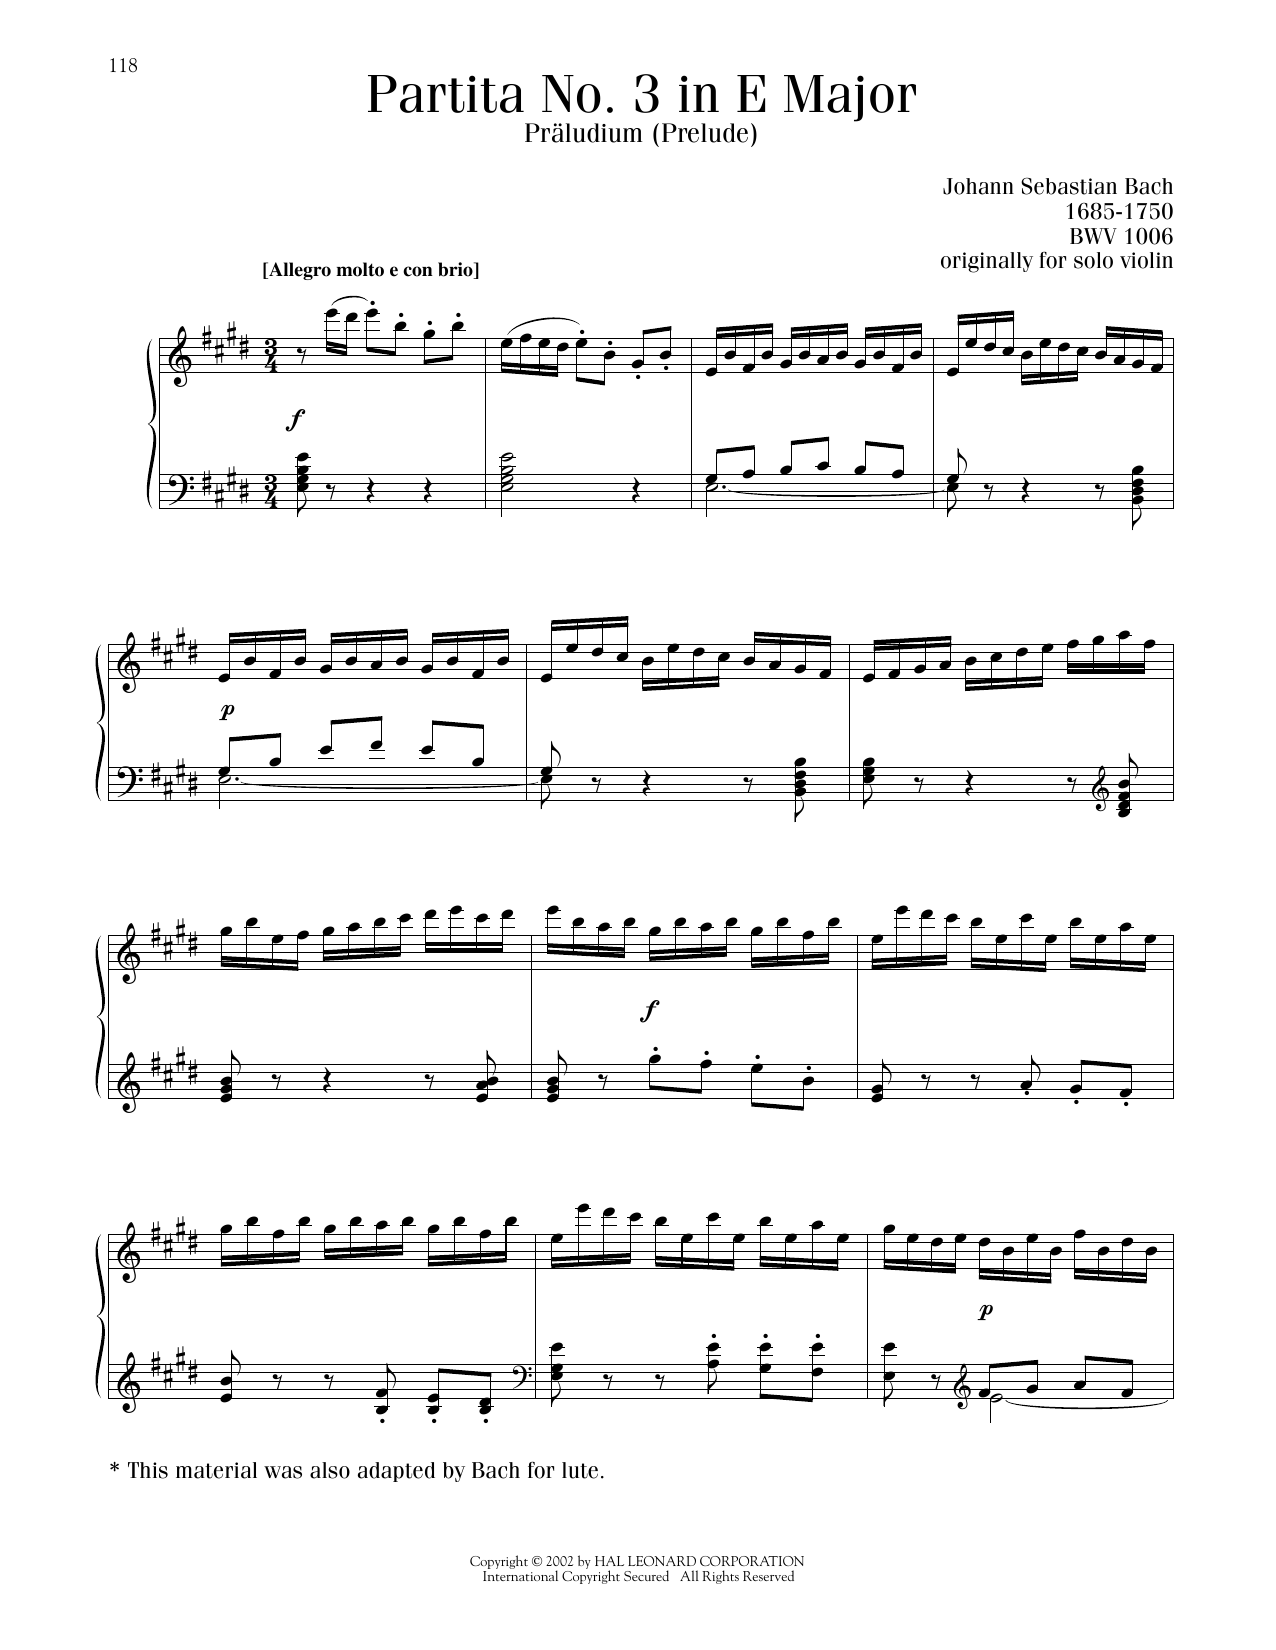 Johann Sebastian Bach Partita No. 3 In E Major, BWV 1006 sheet music notes and chords arranged for Piano Solo